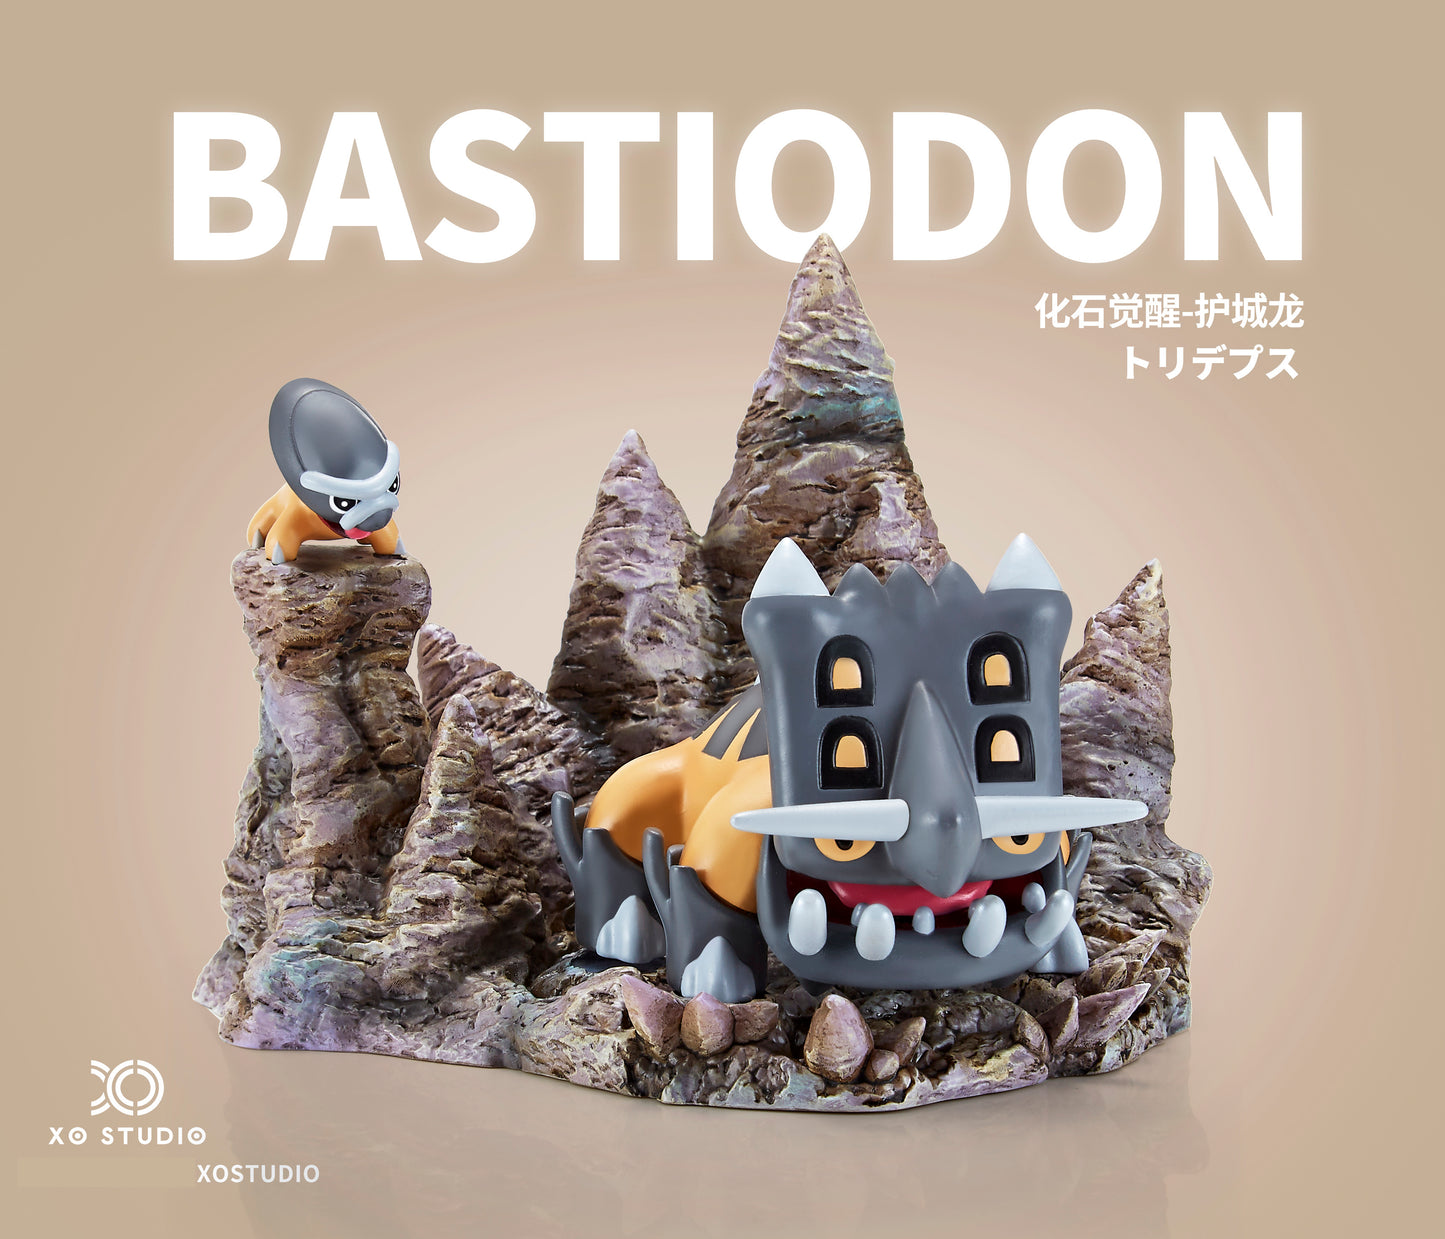 shieldon evolución bastiodon 